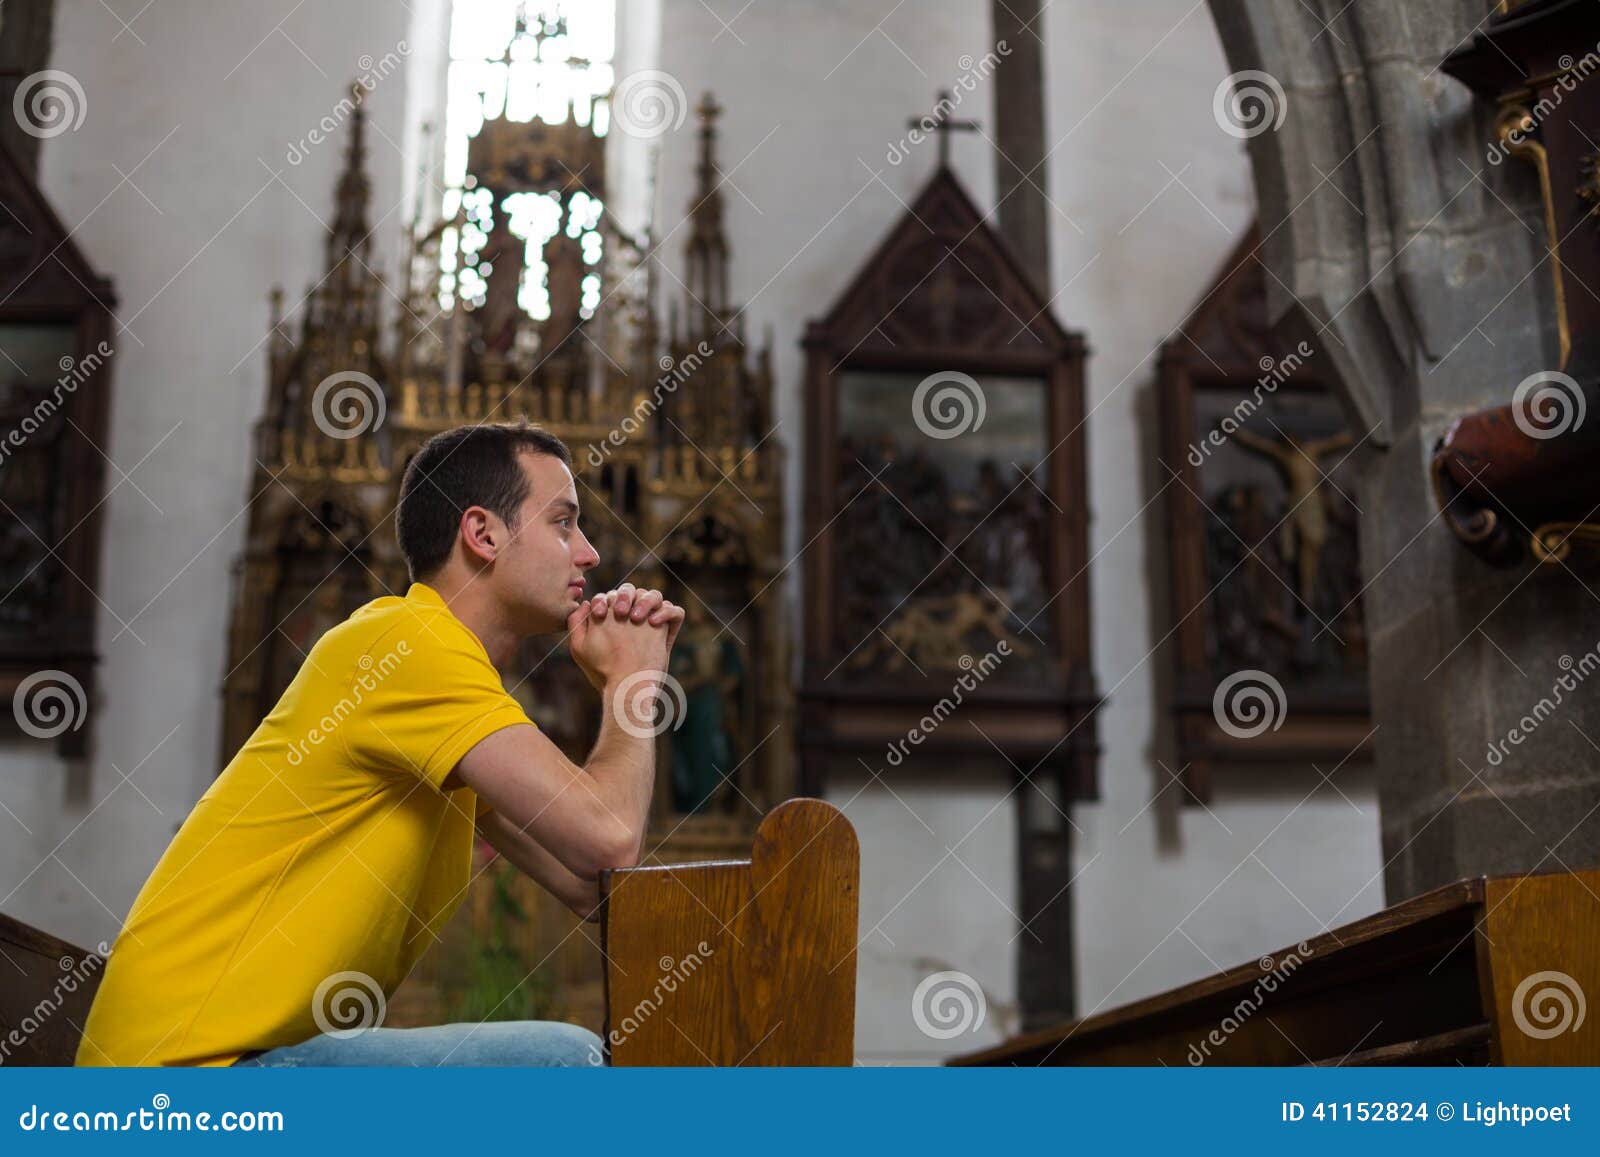 一个闭着眼睛祈祷的男人的画像 库存照片. 图片 包括有 基督徒, 愉快, 生活, 到达, 现有量, 喜悦 - 170871954